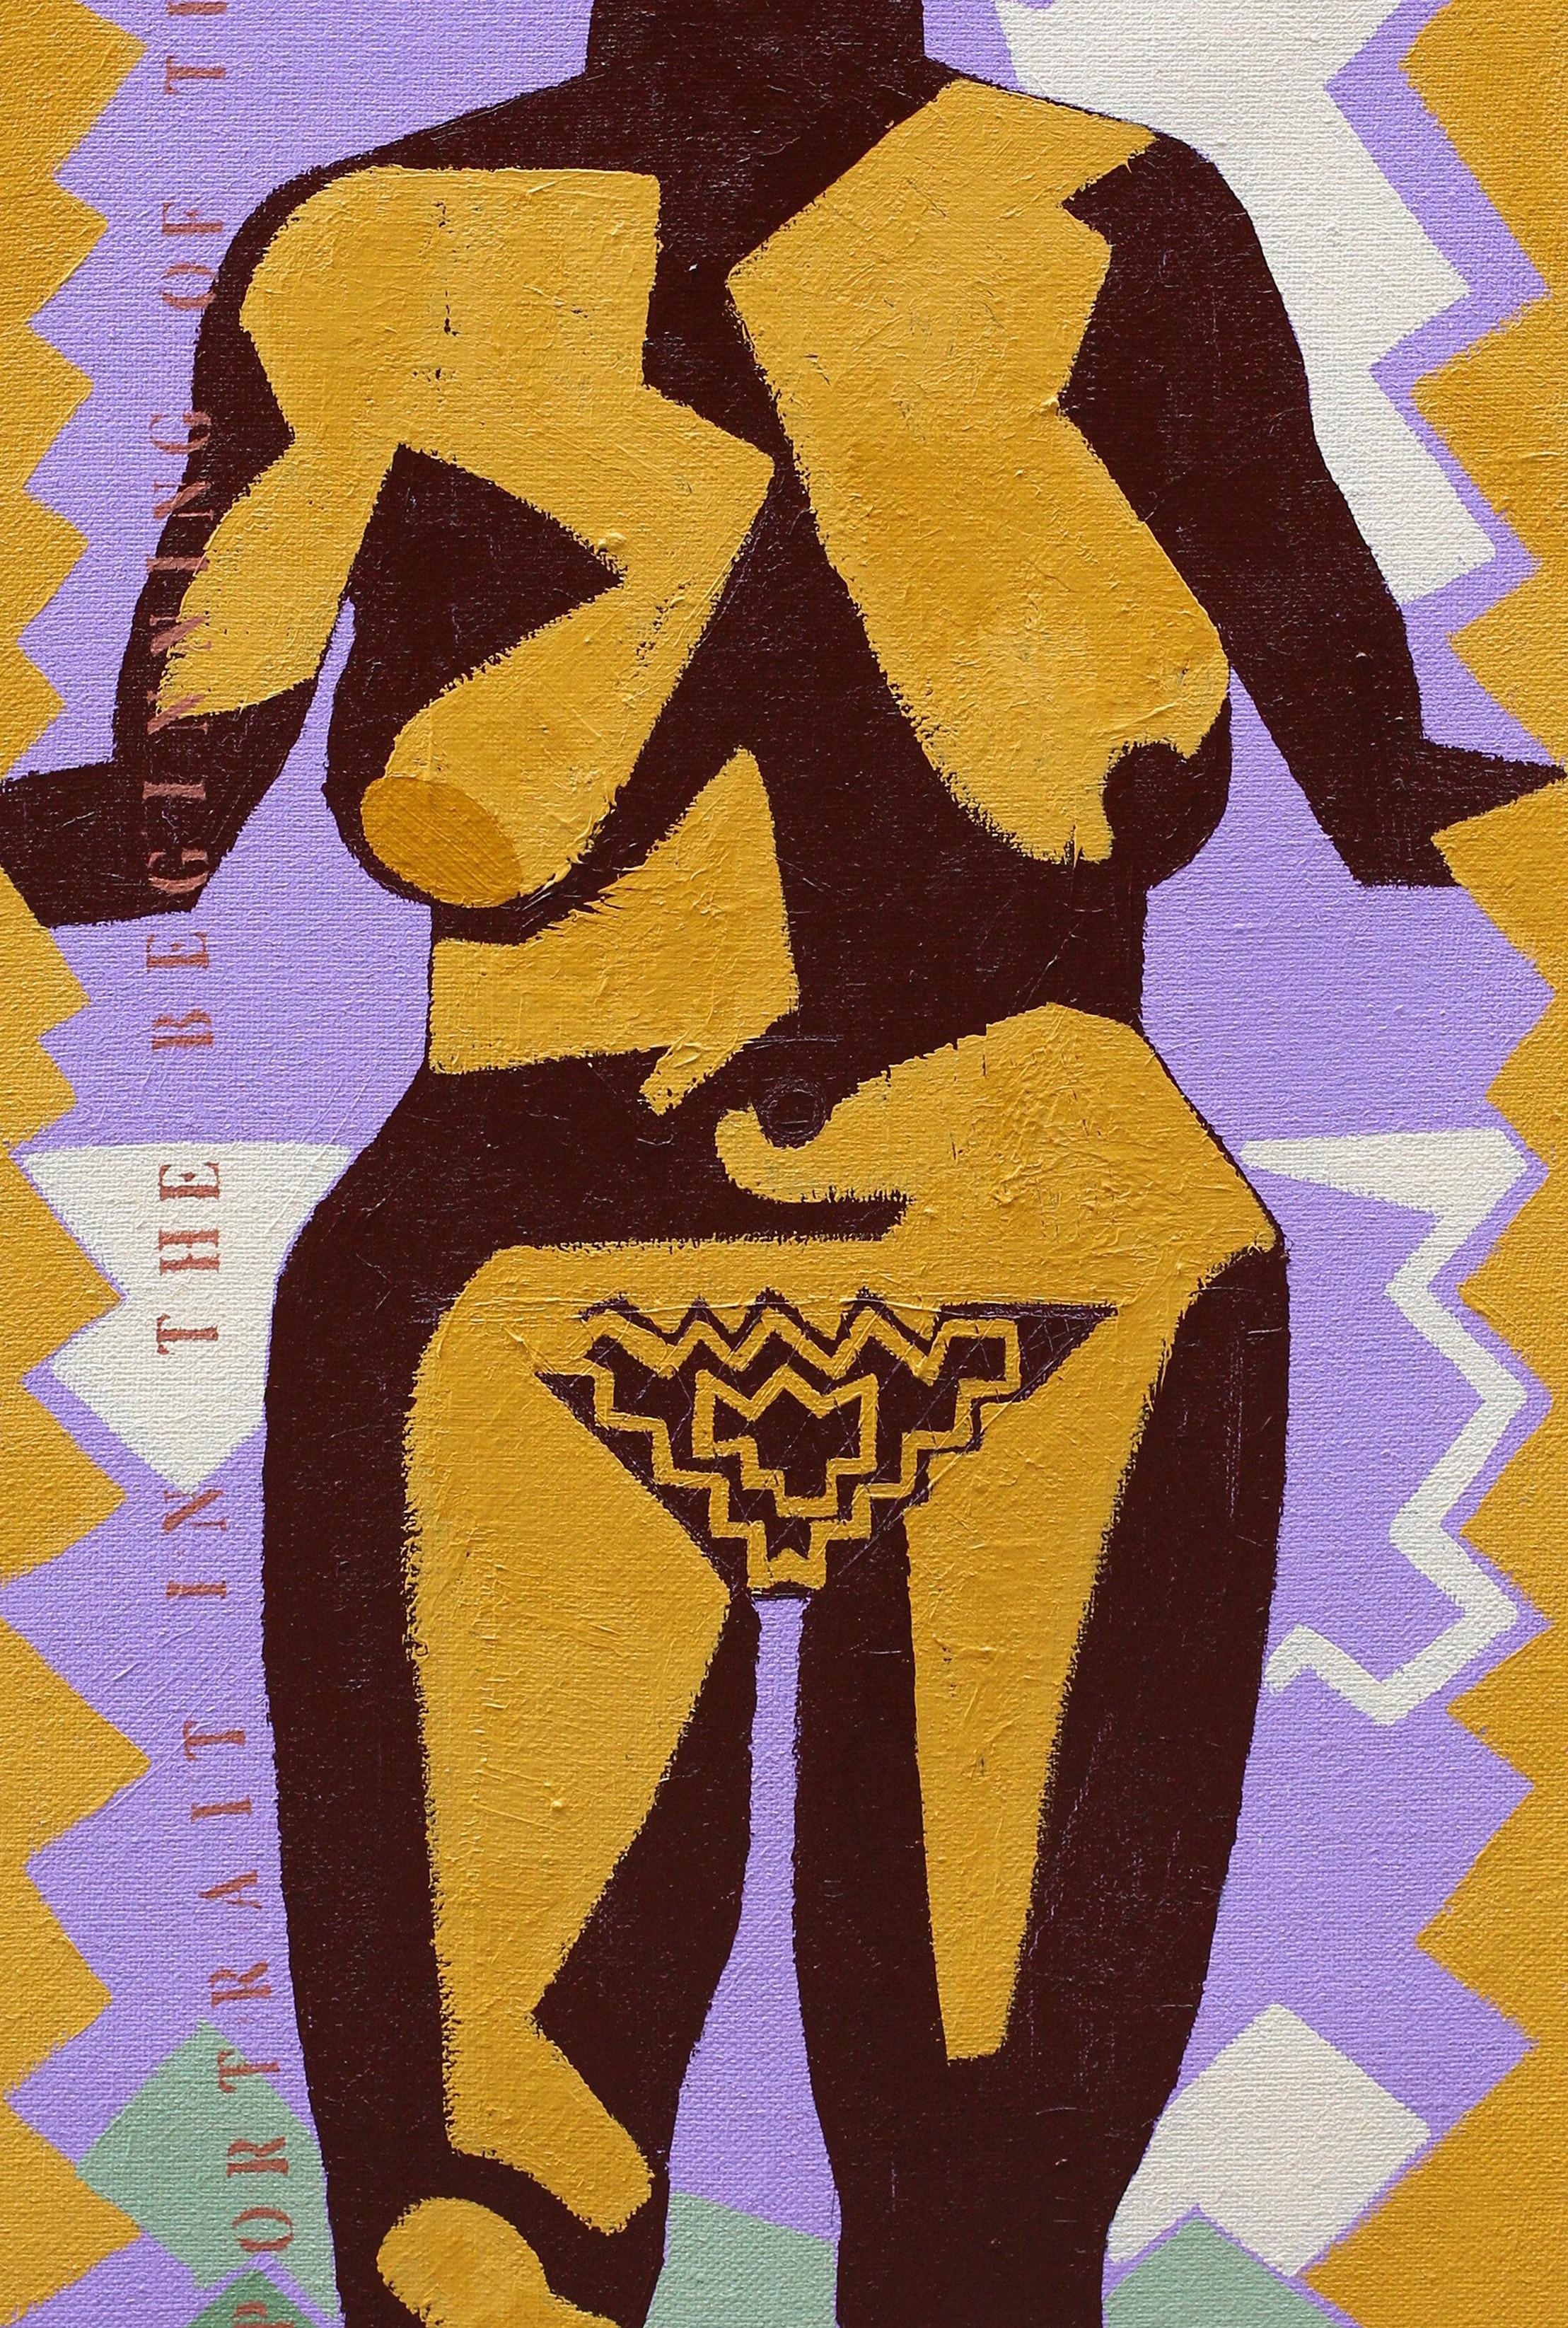 Selbstporträt „Der Beginn der Zeit“ – zeitgenössisch, weiblich, violett, gelb (Zeitgenössisch), Painting, von Alexandru Rădvan